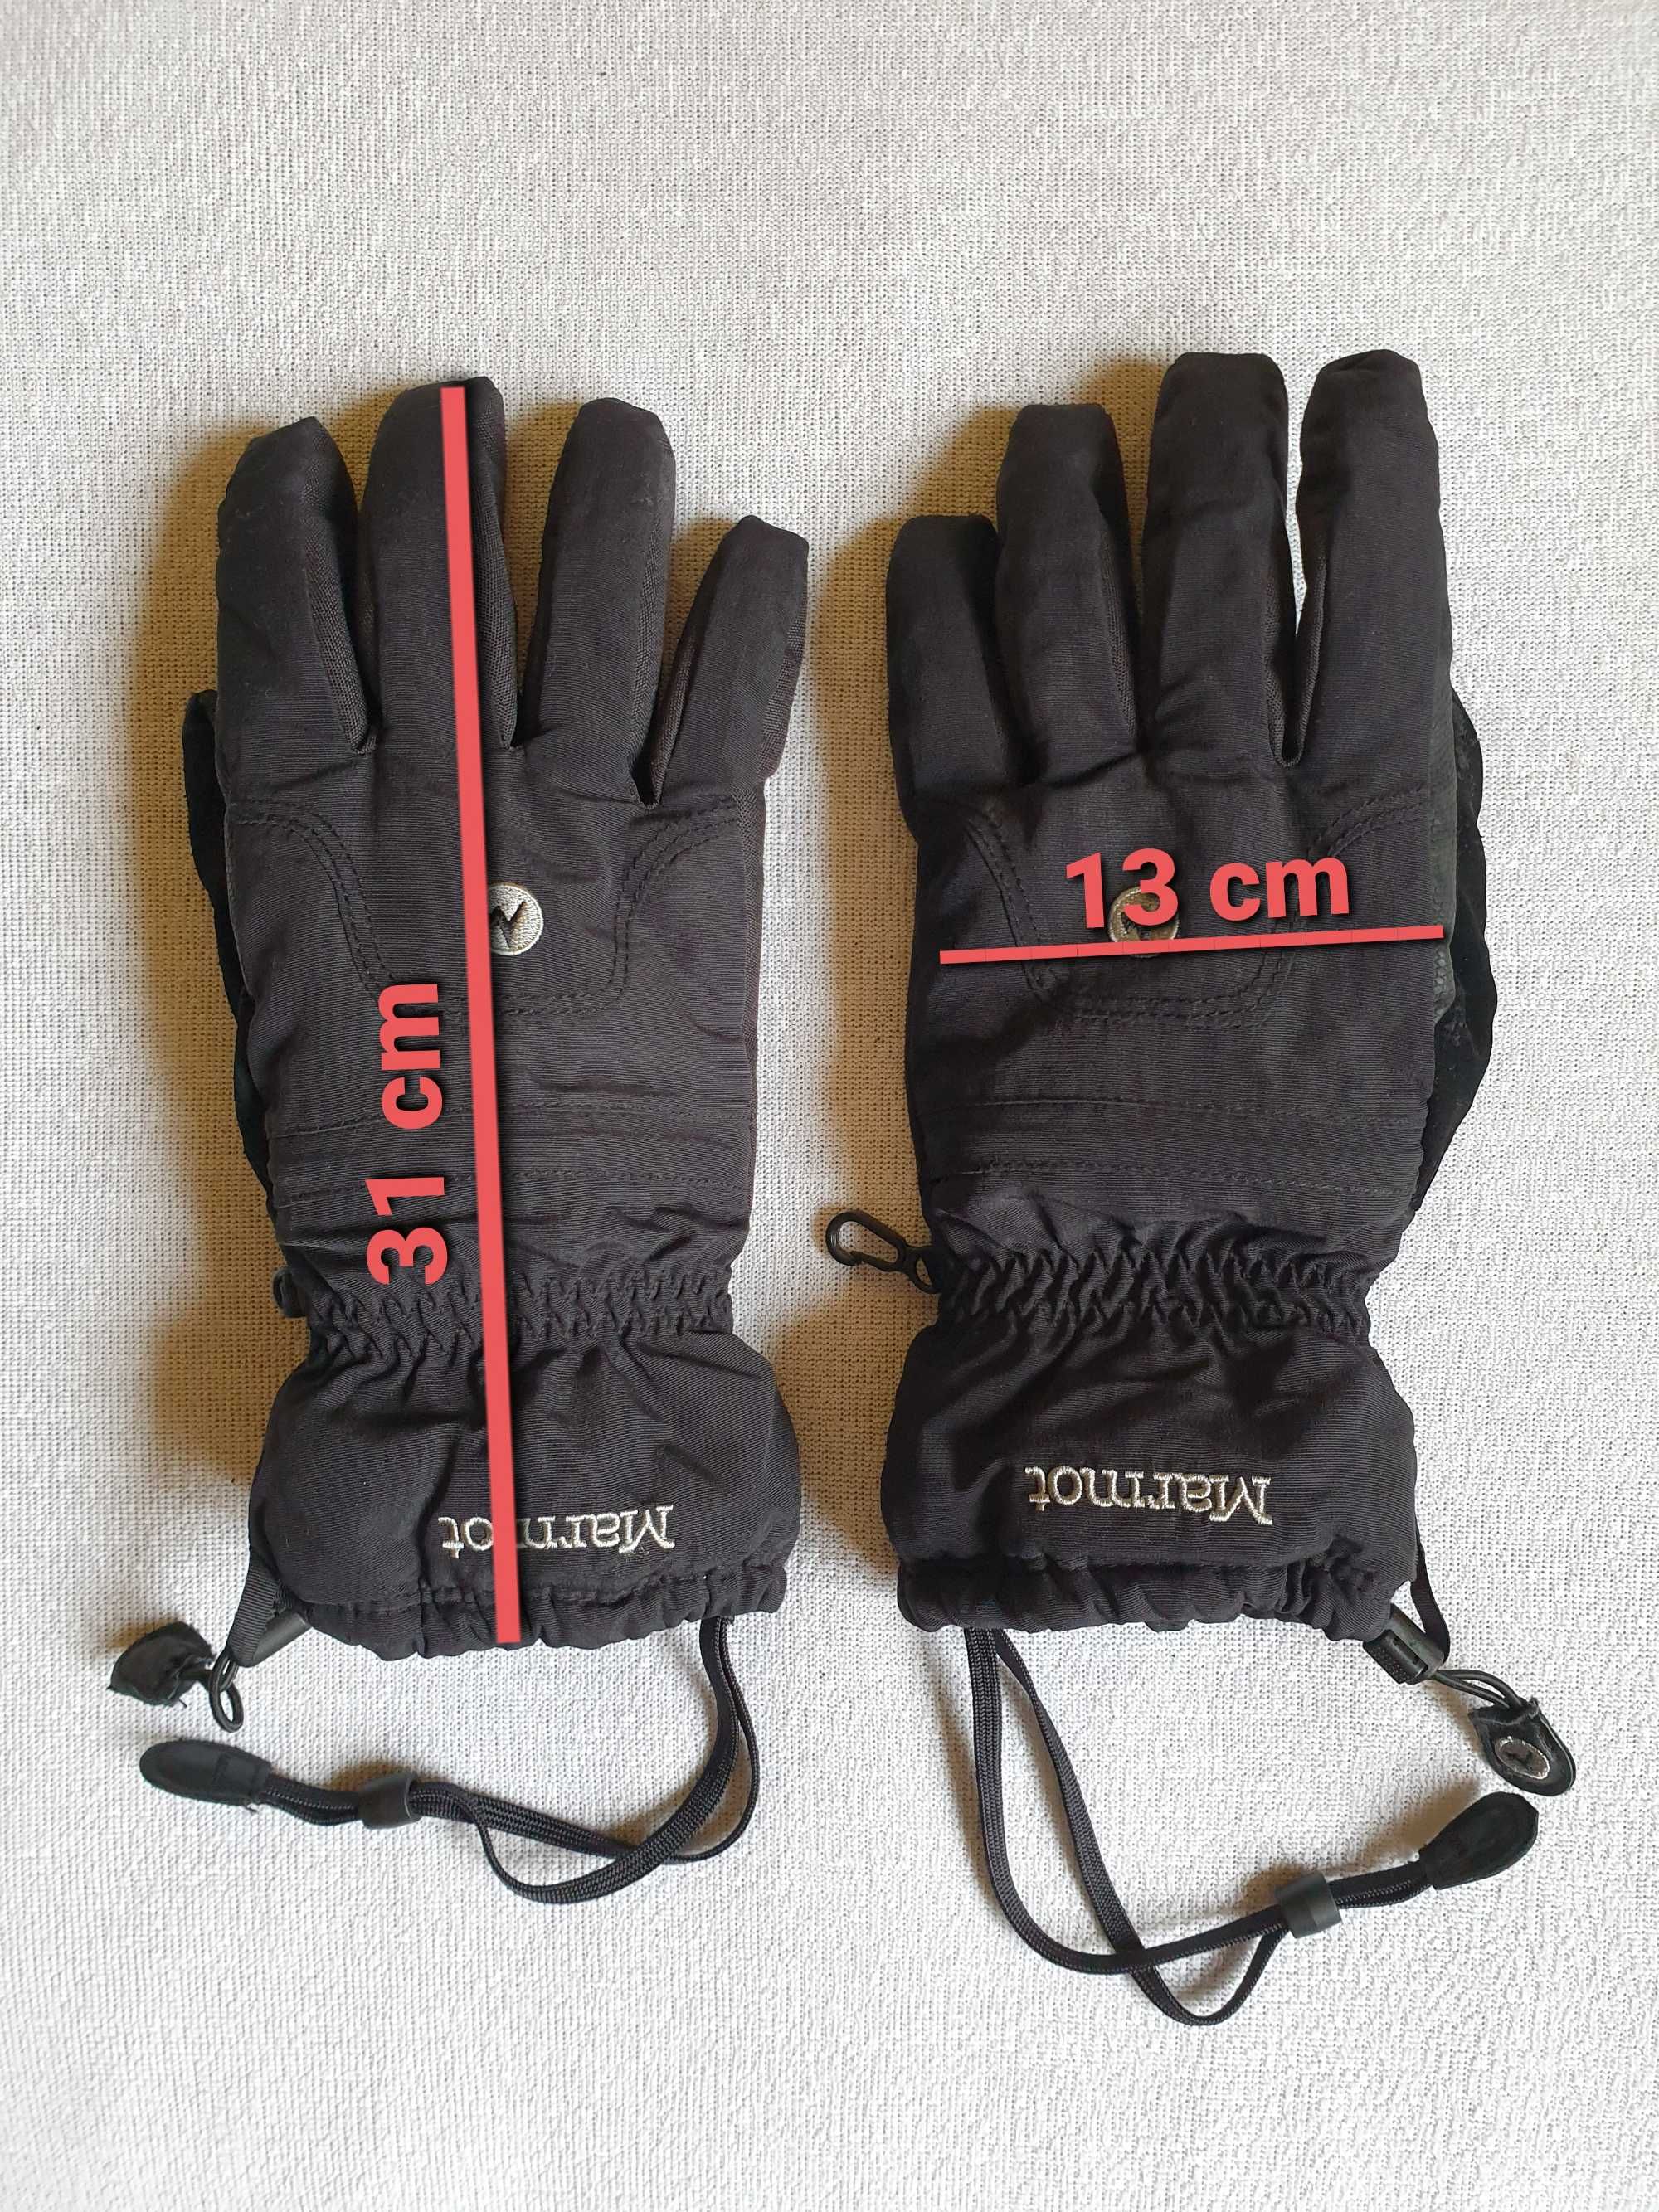 Rękawice zimowe / snowboardowe / trekkingowe Marmot, rozmiar L